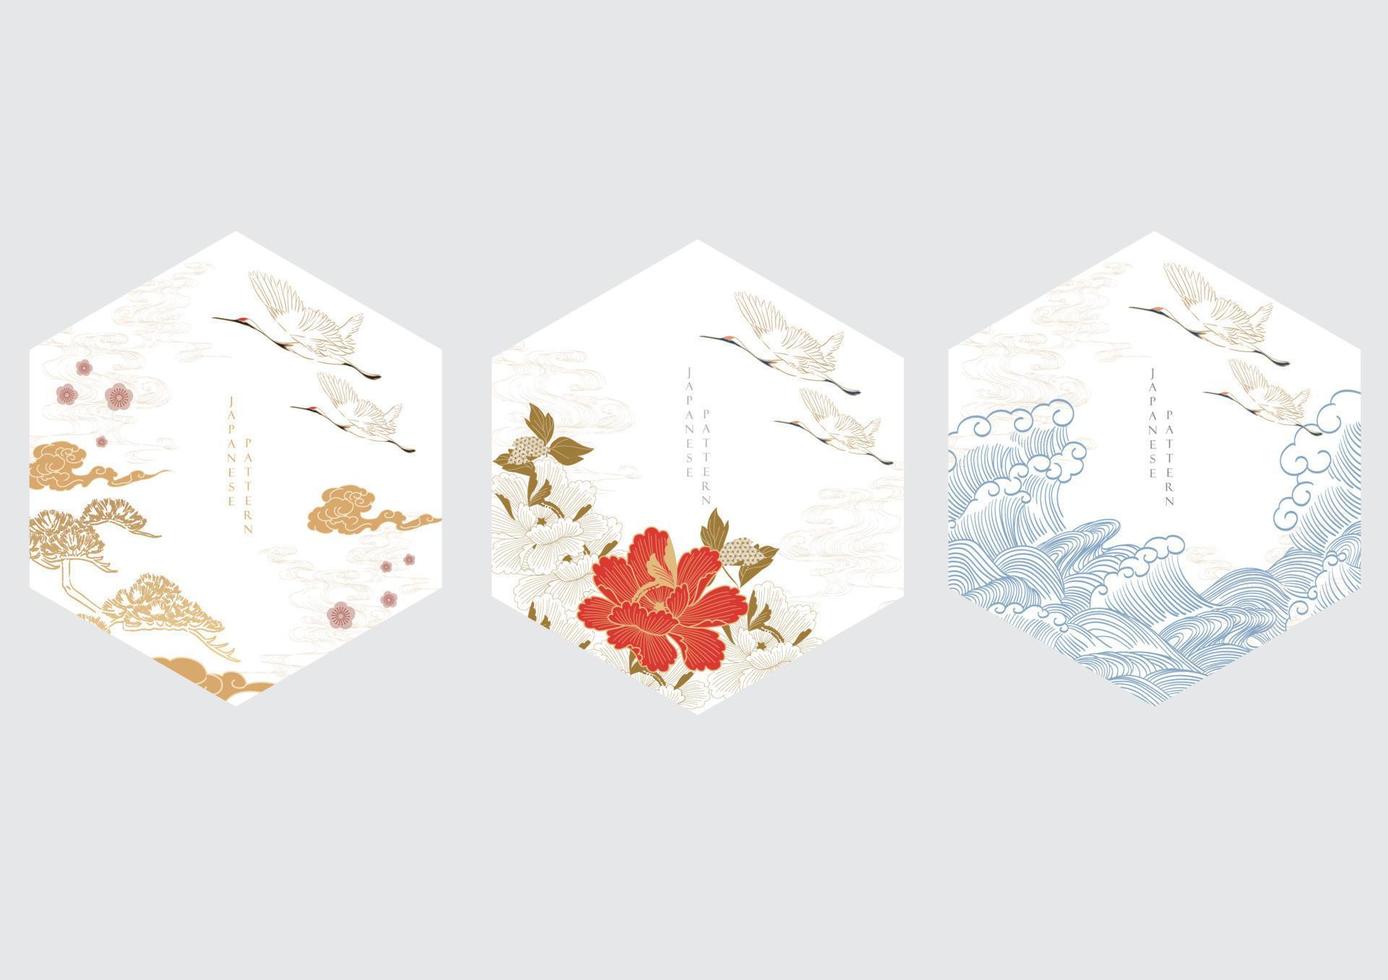 arrière-plan japonais avec vecteur d'oiseaux de grue. modèle de paysage naturel asiatique avec motif de vague dessiné à la main dans un style oriental. création de logo géométrique.